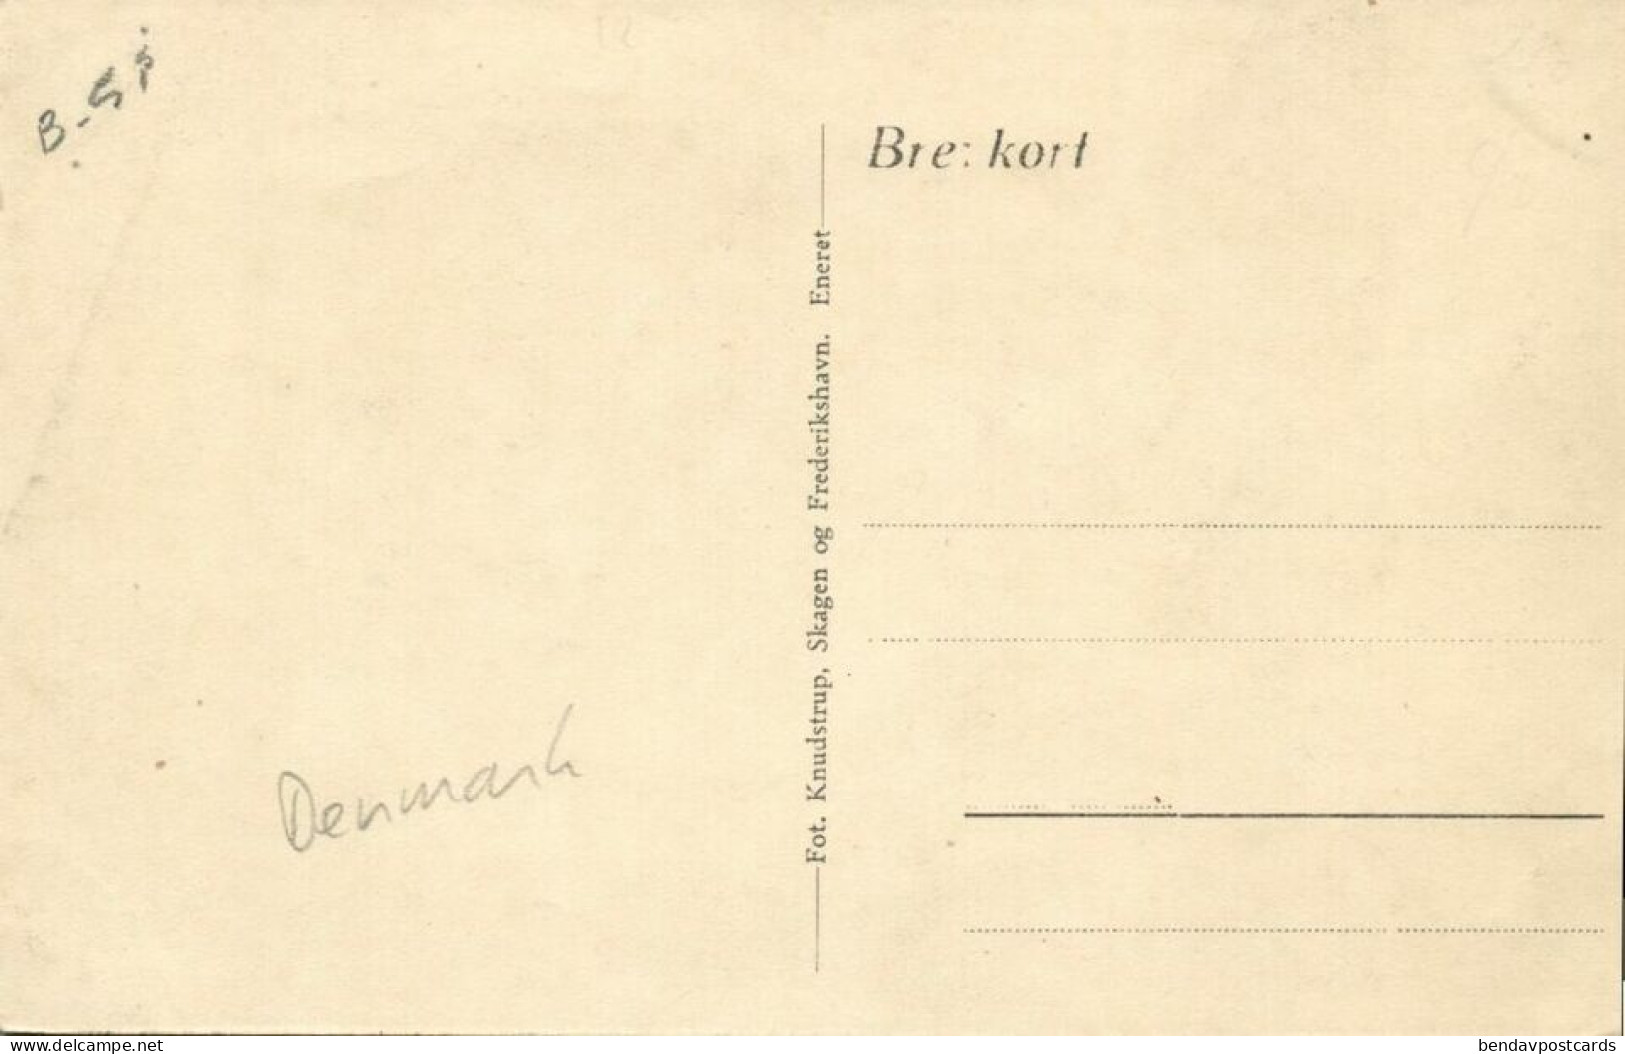 Denmark, FREDERIKHAVN, Havnepladsen Og Havnegade (1910s) Postcard - Danemark